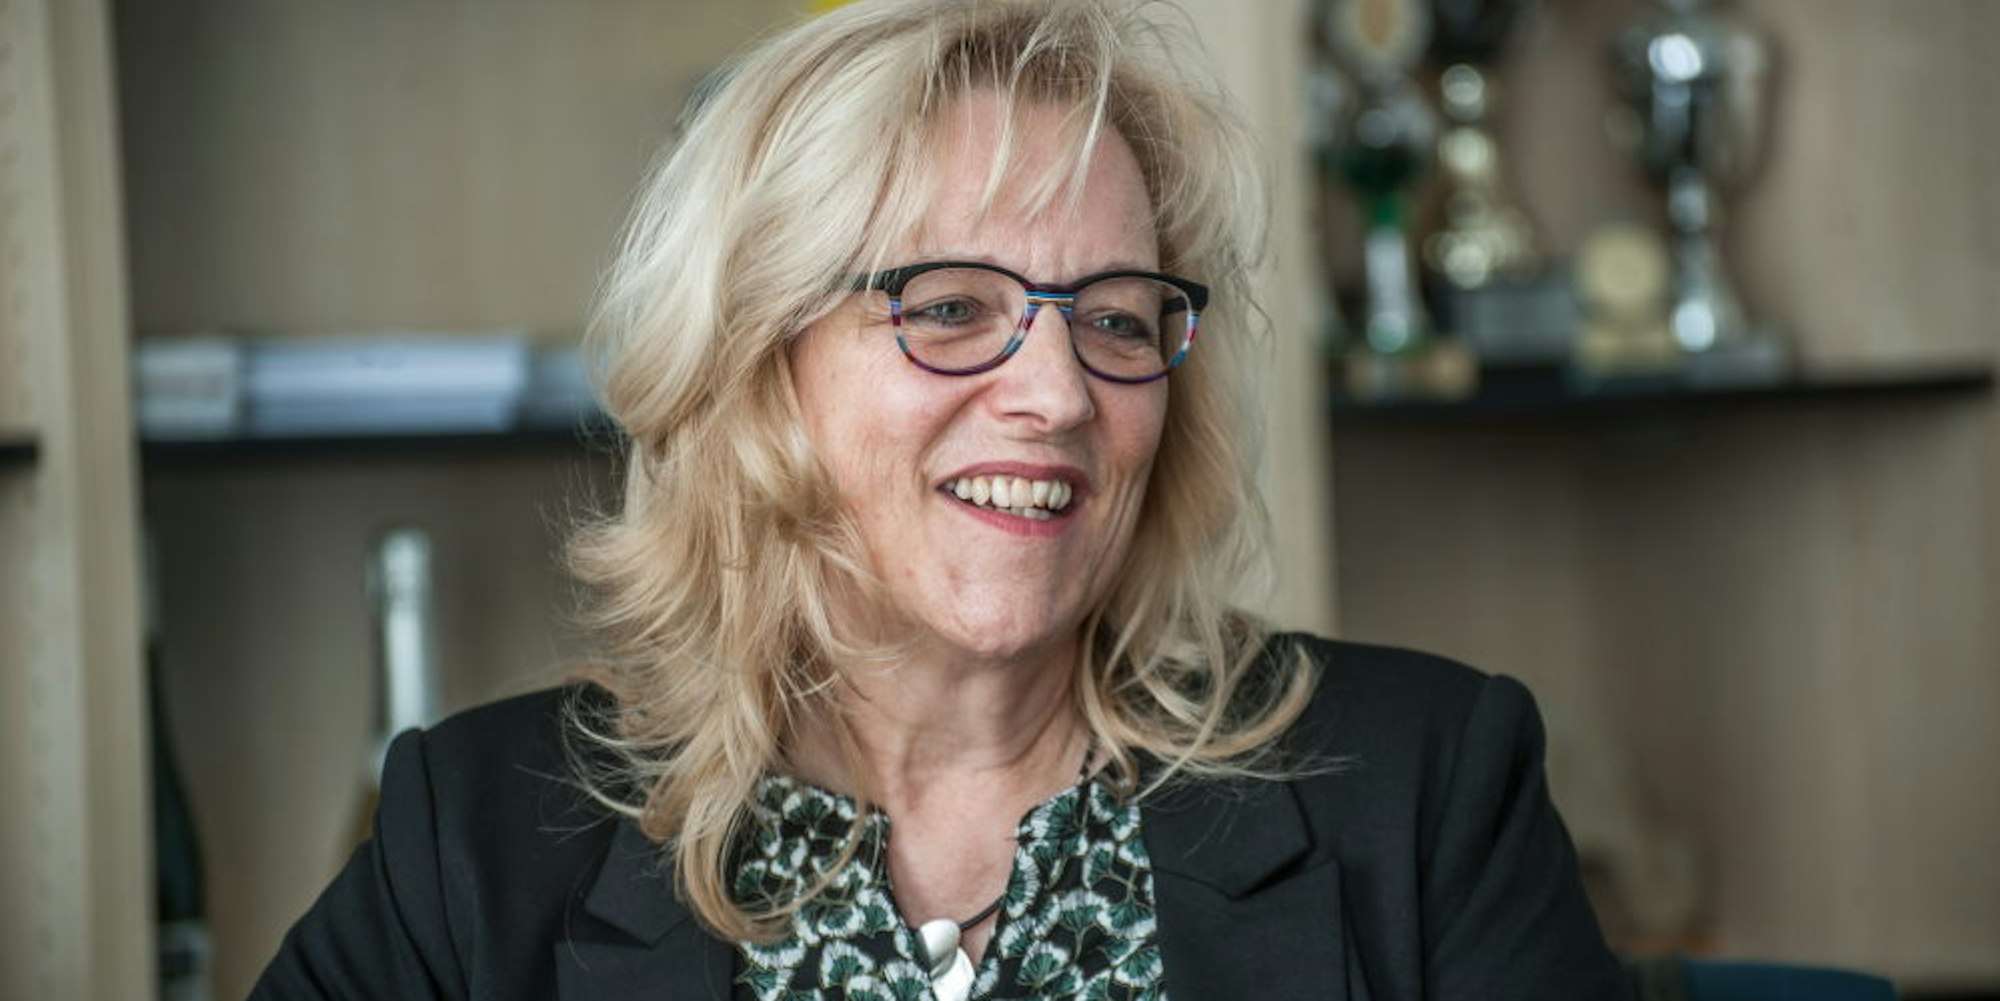 Ulrike Hanke studierte an der Fachhochschule für öffentliche Verwaltung in Köln dual und schloss 1981 als Diplom- Verwaltungswirtin ab. Darauf folgten Familie, Karriere und viel Ehrenamt.